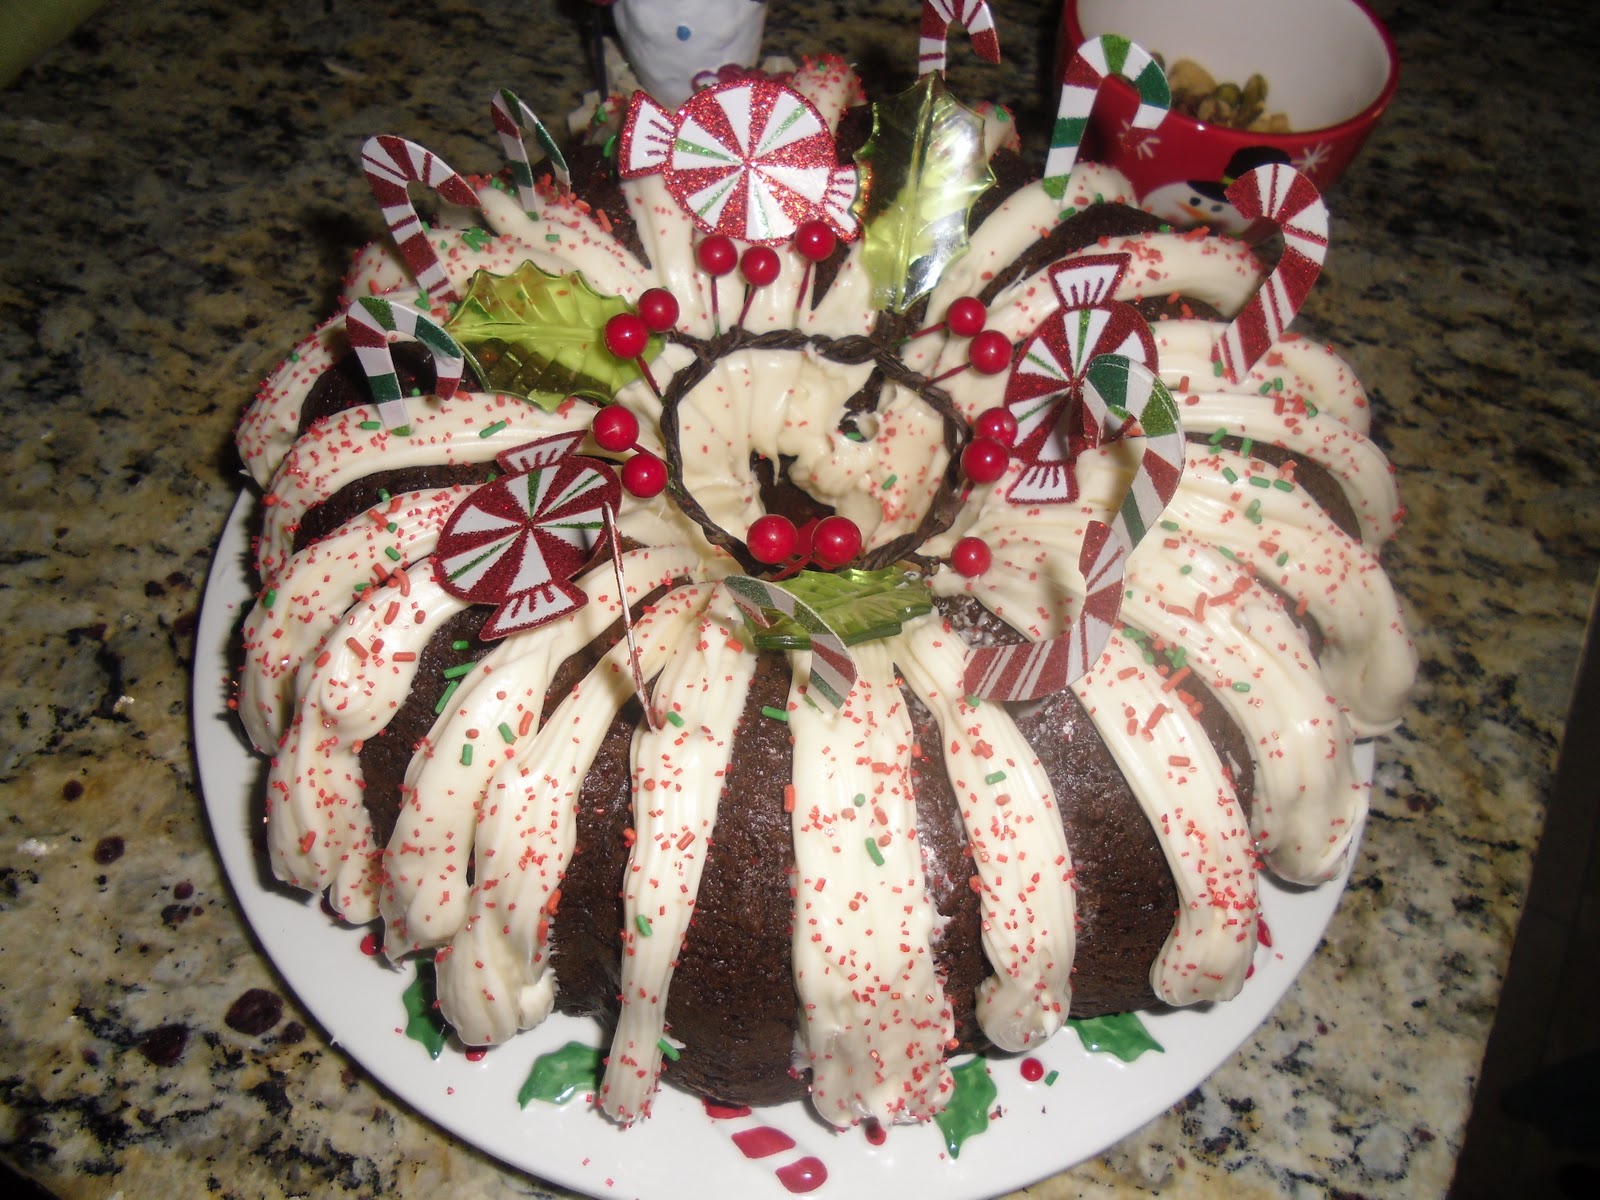 Bundt Cakes For Christmas Recipes - Christmas Cake Ideas & Recipes | MyRecipes